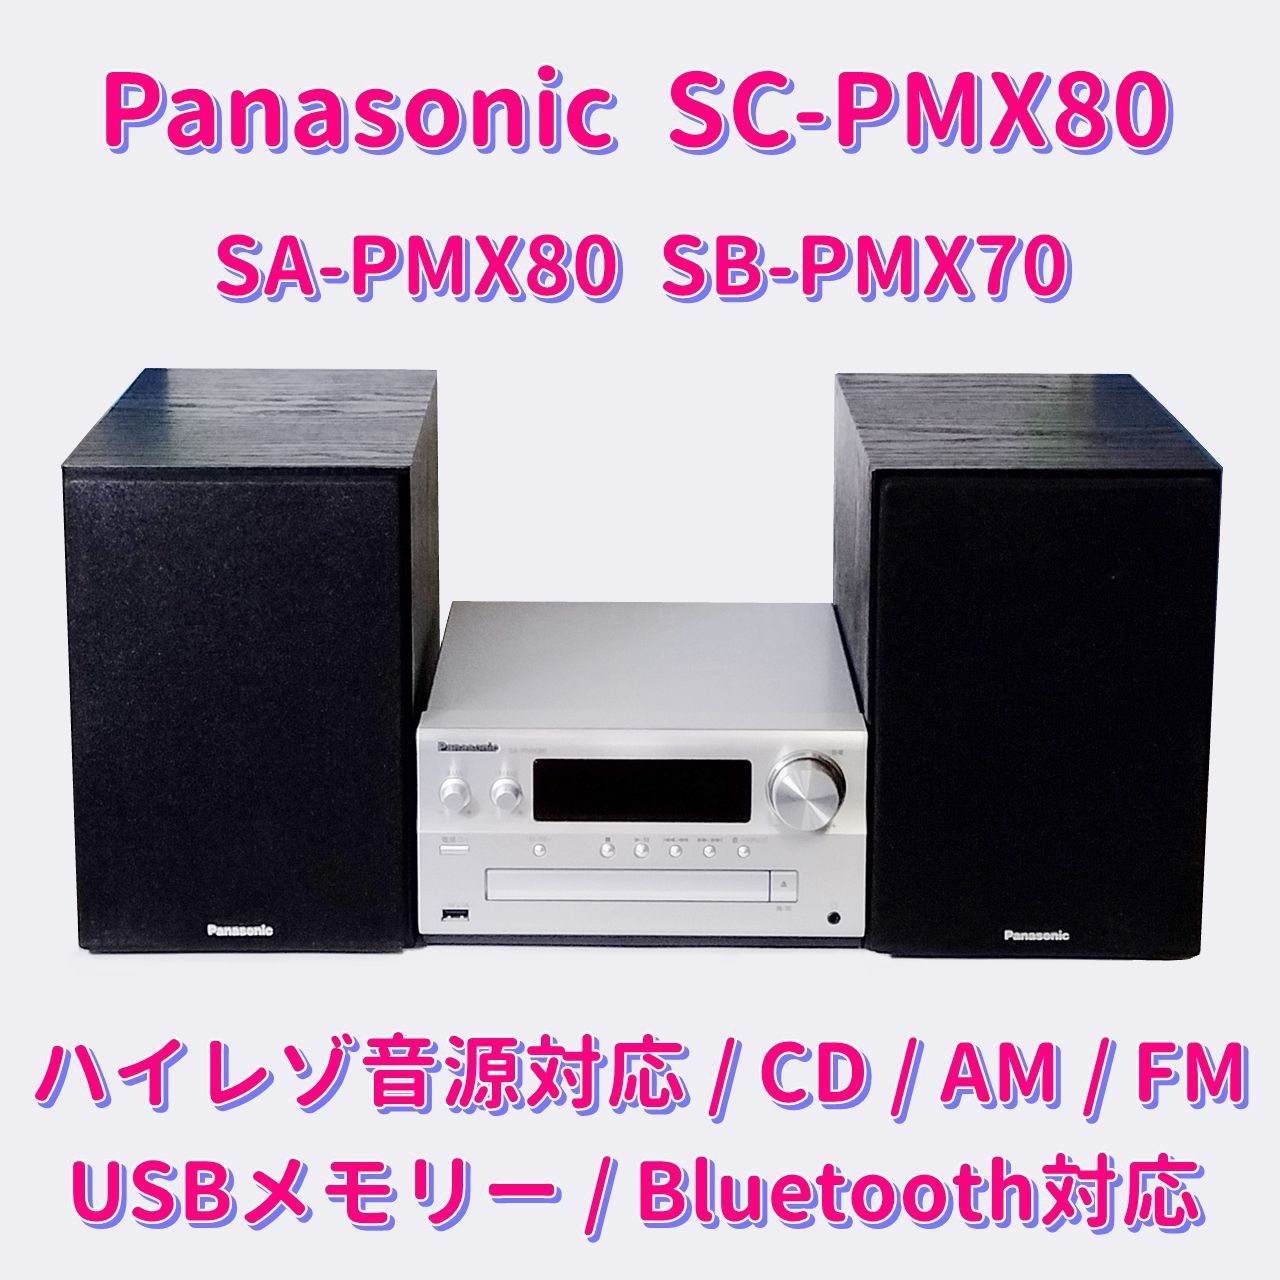 Panasonic CDステレオシステム ハイレゾ音源対応  SC-PMX70Panasonic